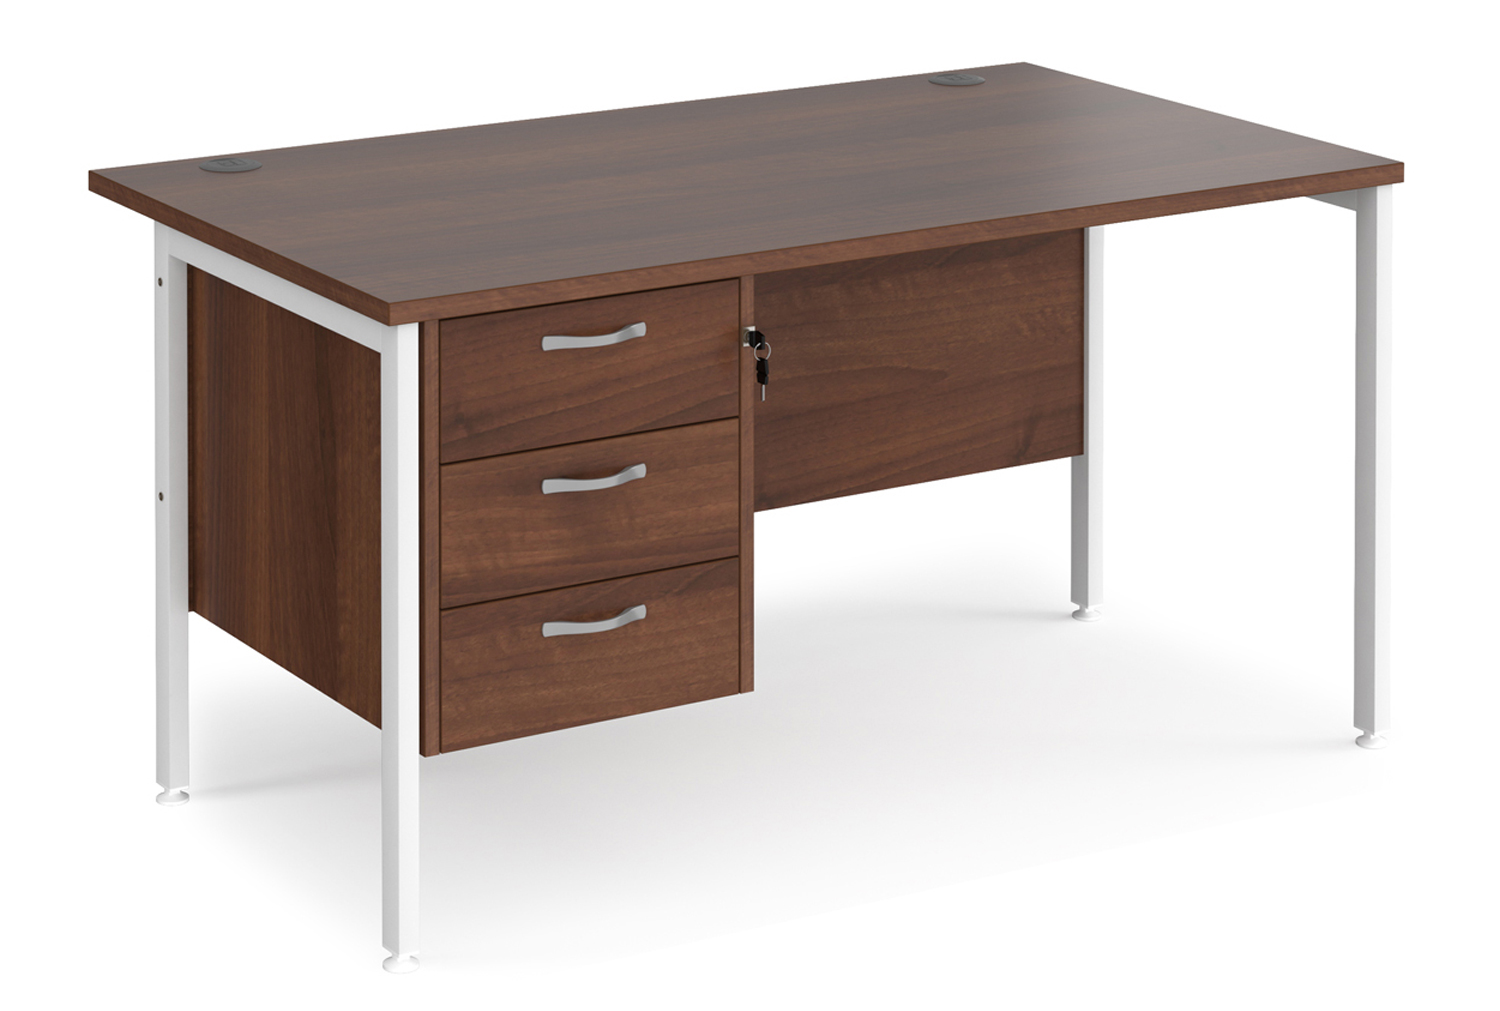 Value Line Deluxe H-Leg Rectangular Office Desk 3 Drawers (White Legs), 140wx80dx73h (cm), Walnut